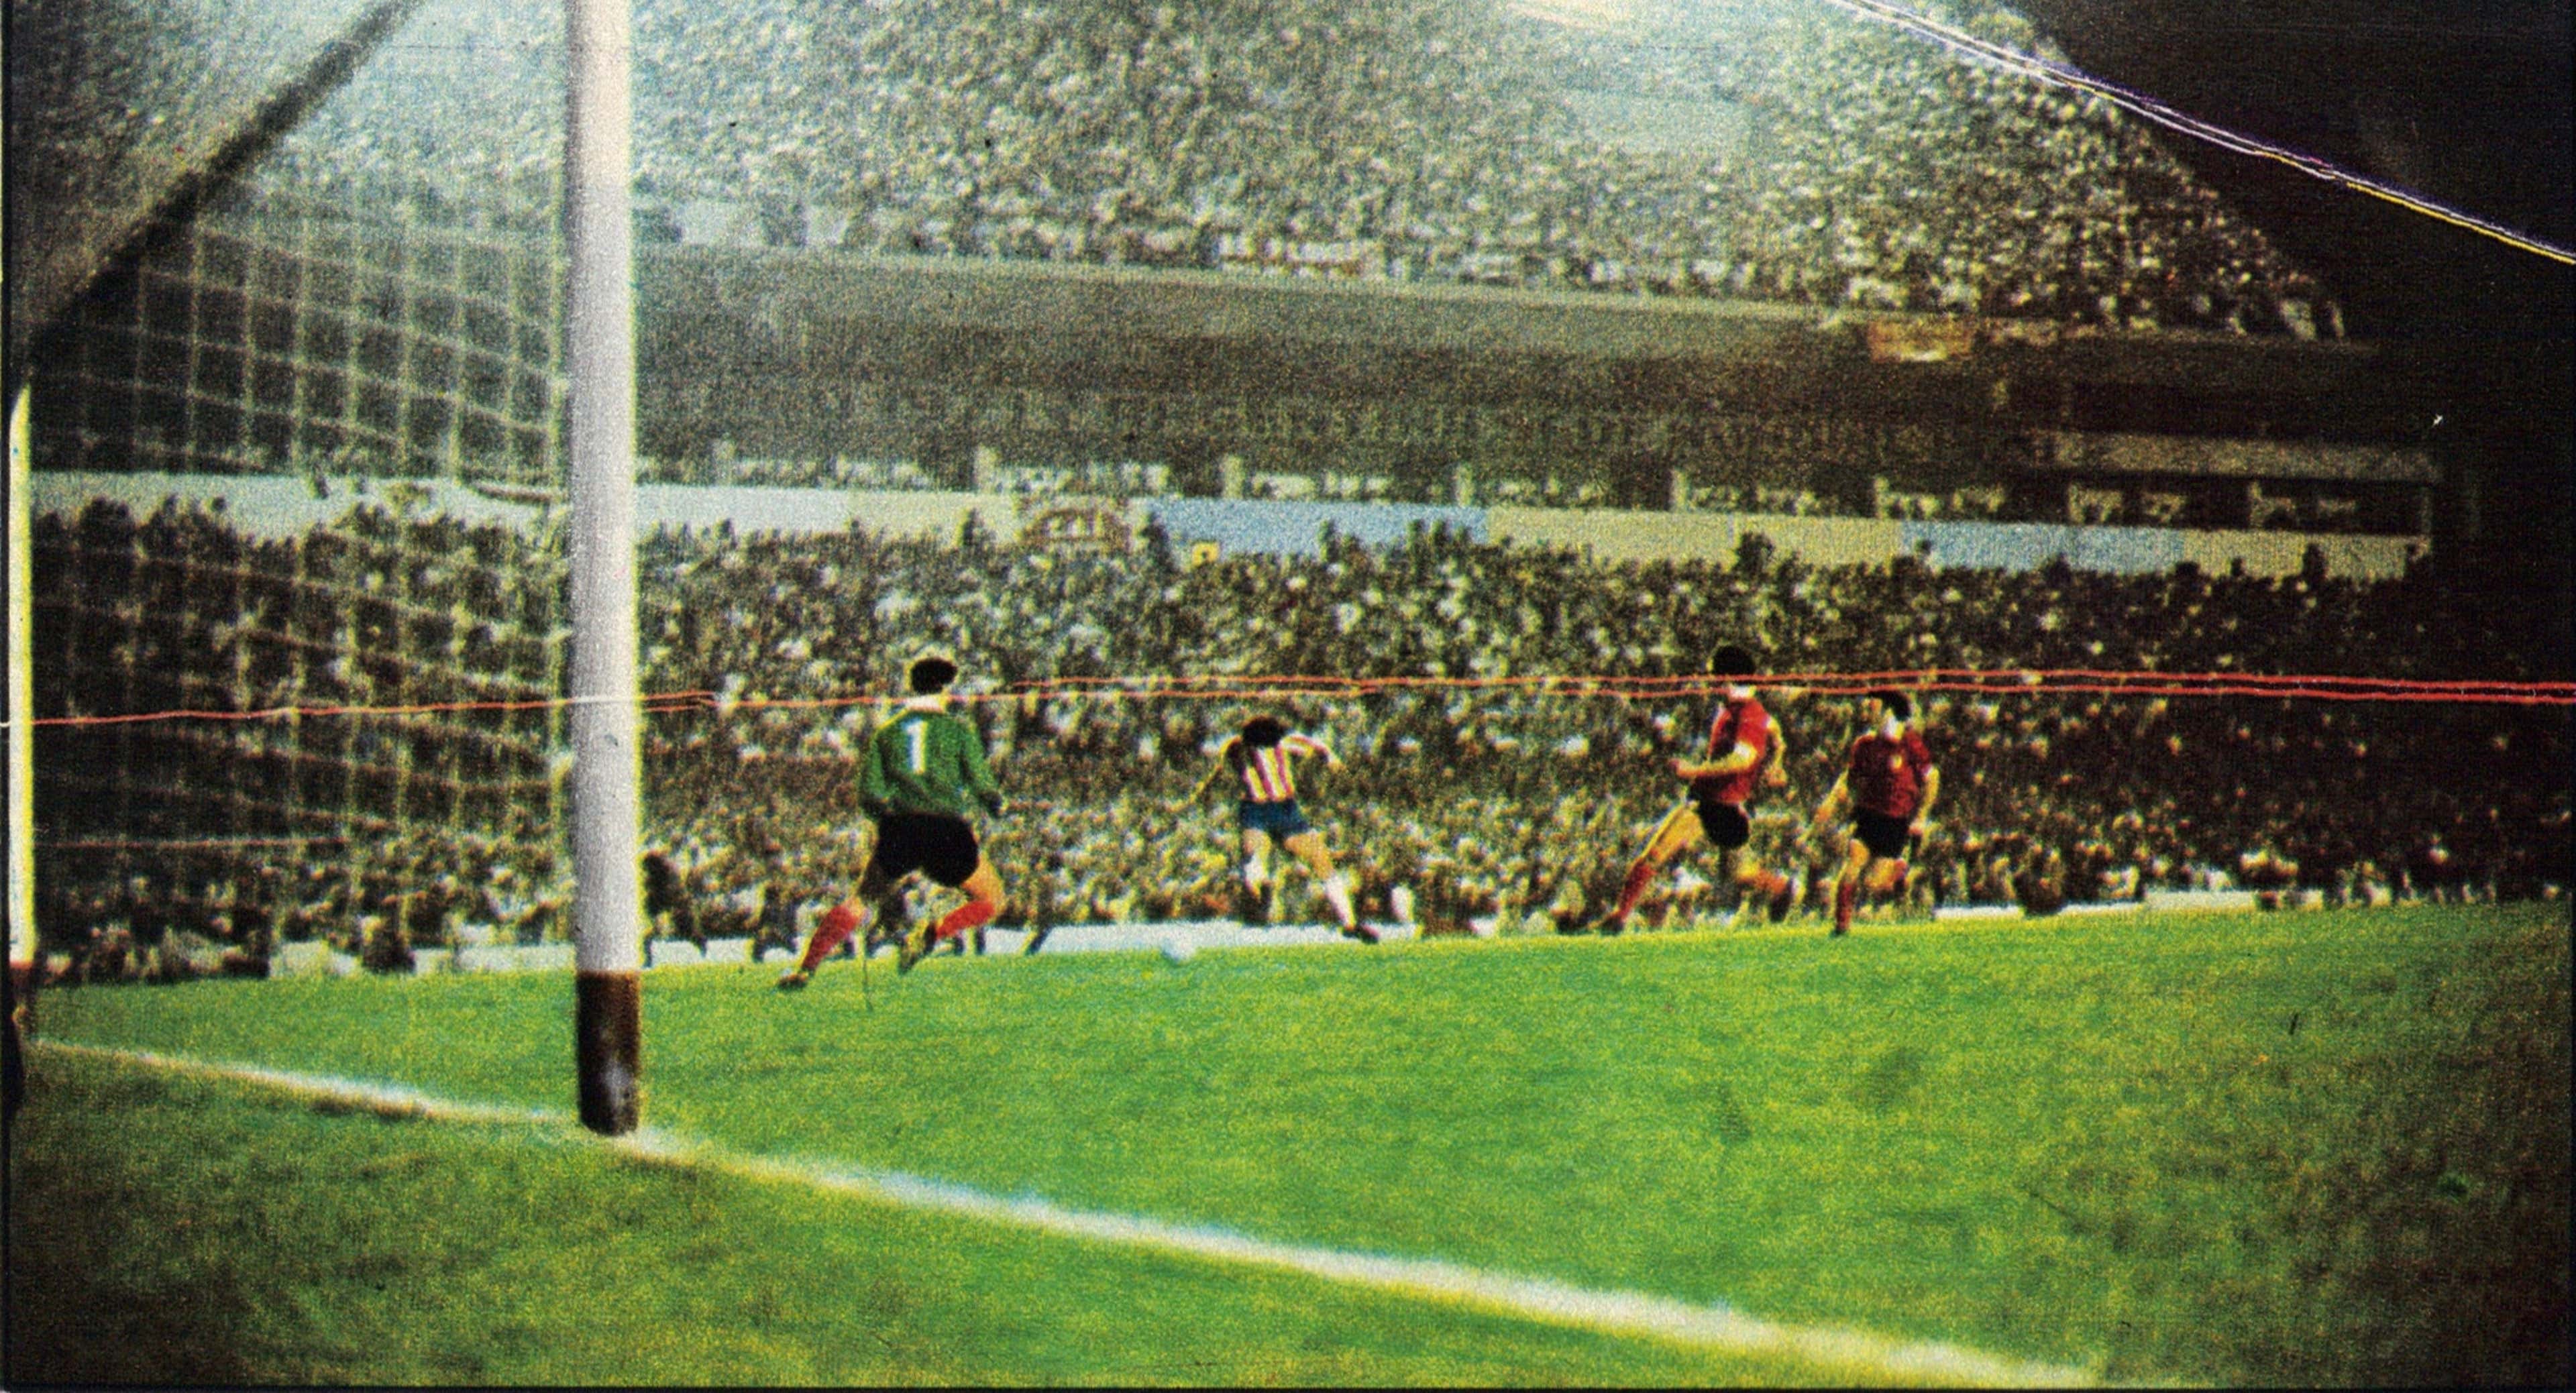 Independiente quer o nome de uma lenda para o seu estádio